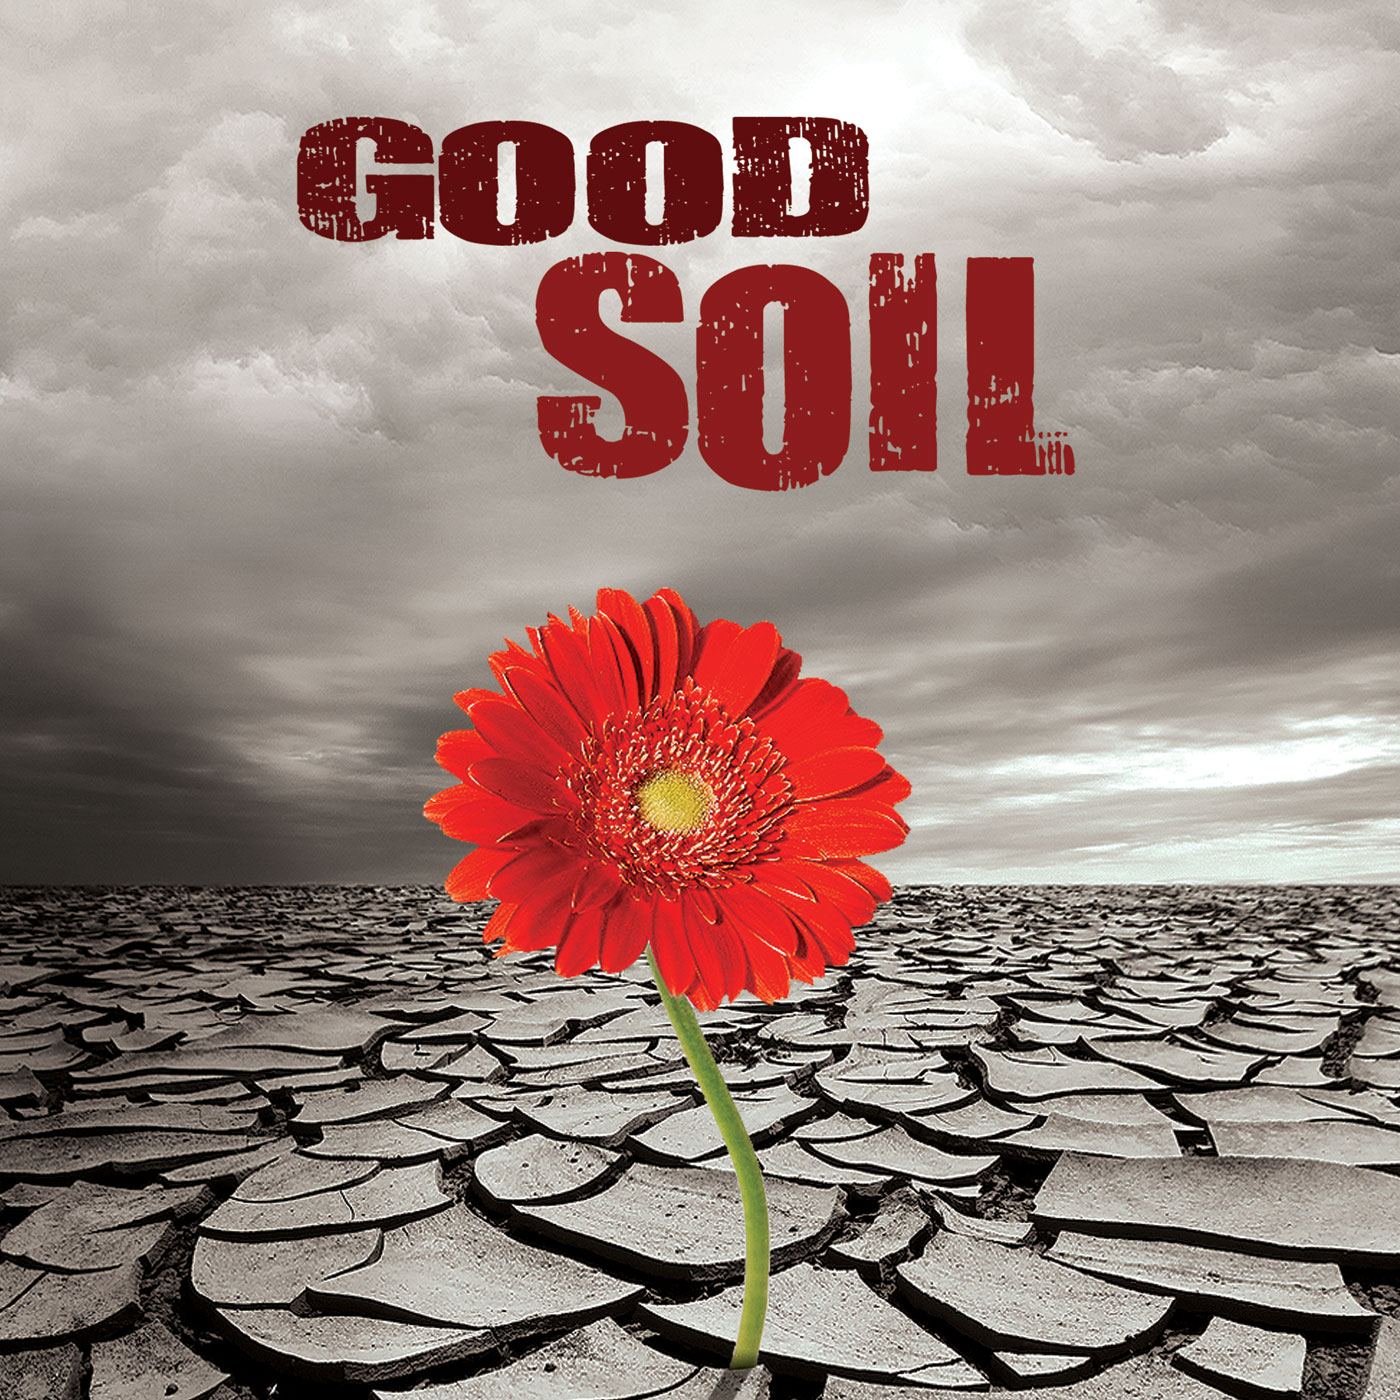 Good Soil - Ezekiel 37 - Mike Taylor - 2-17-2019